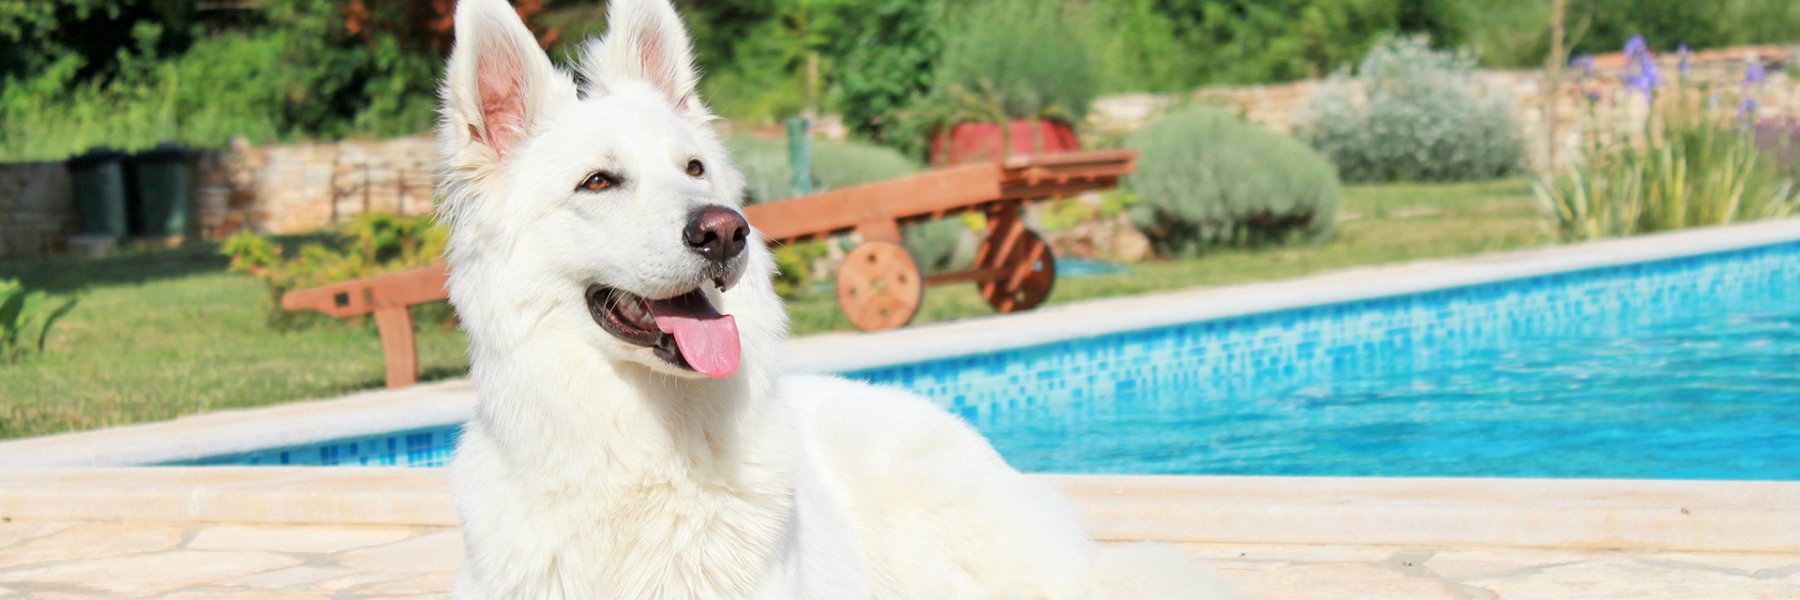 Ferienhausurlaub mit Hund in Kroatien 